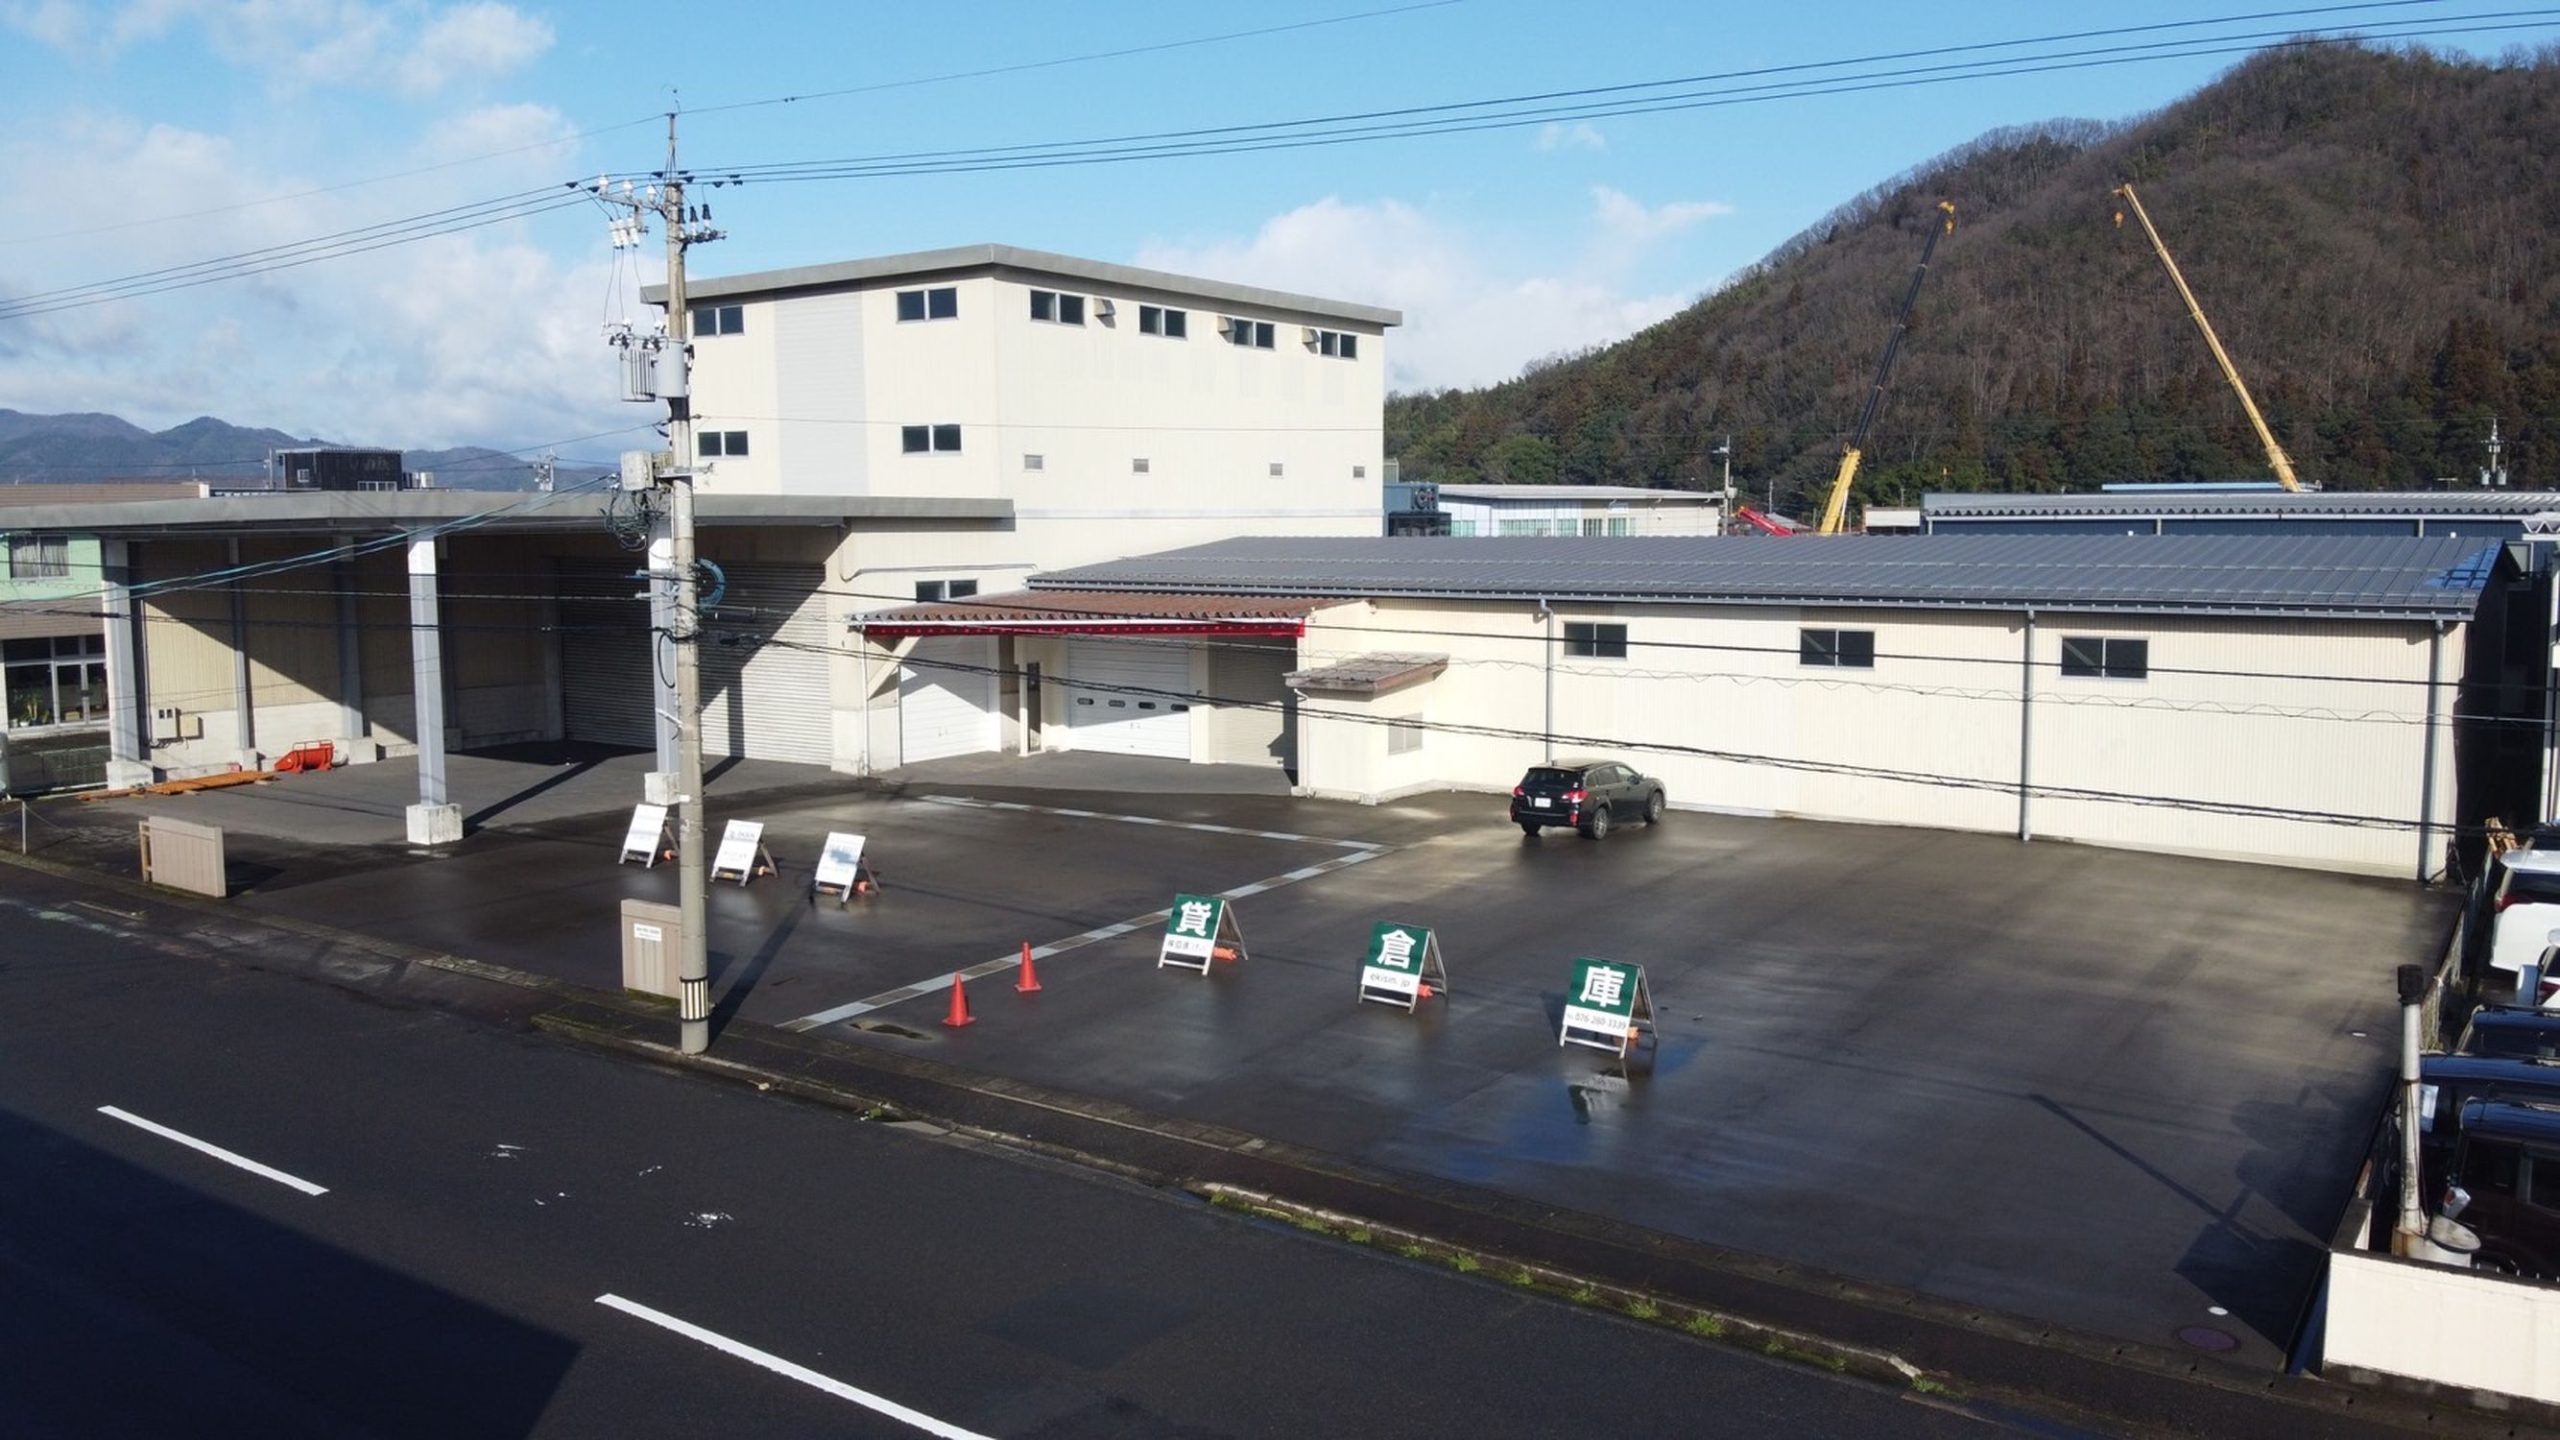 福井県越前市にございます【越前小野谷 岩並倉庫】の物件資料を更新しました。